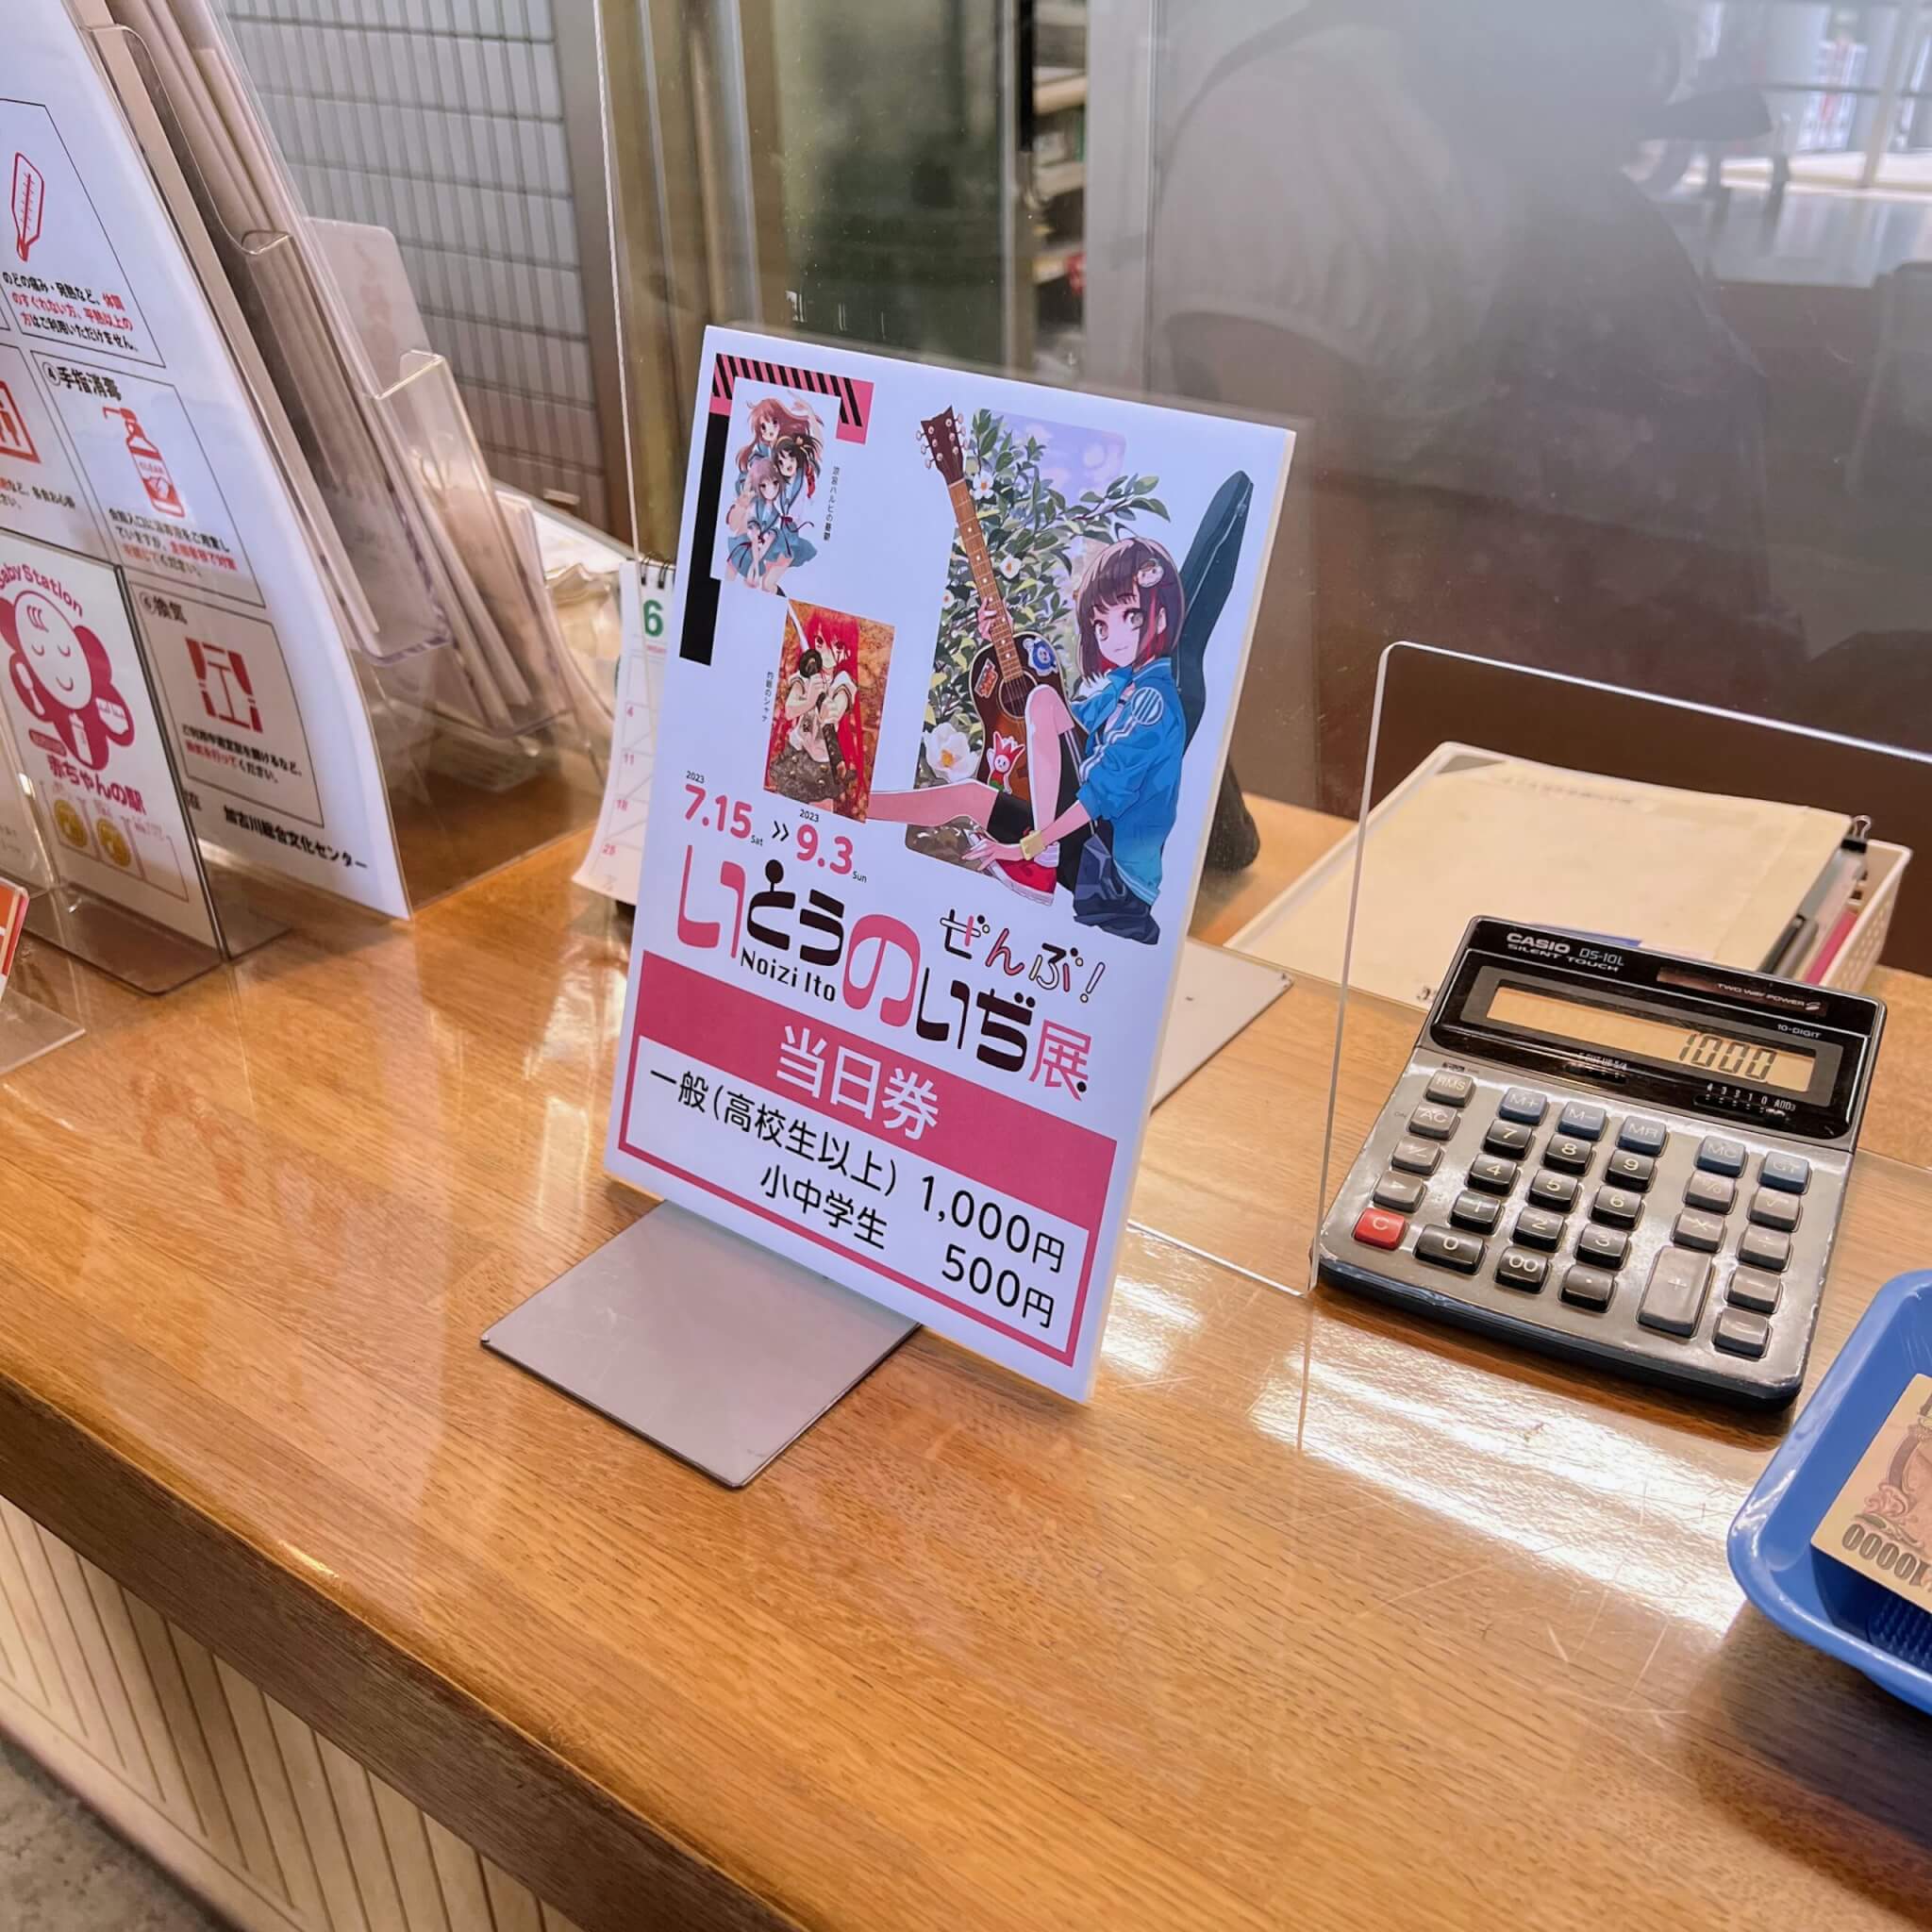 加古川総合文化センターの受付でいとうのいぢ展の当日券を購入するところ